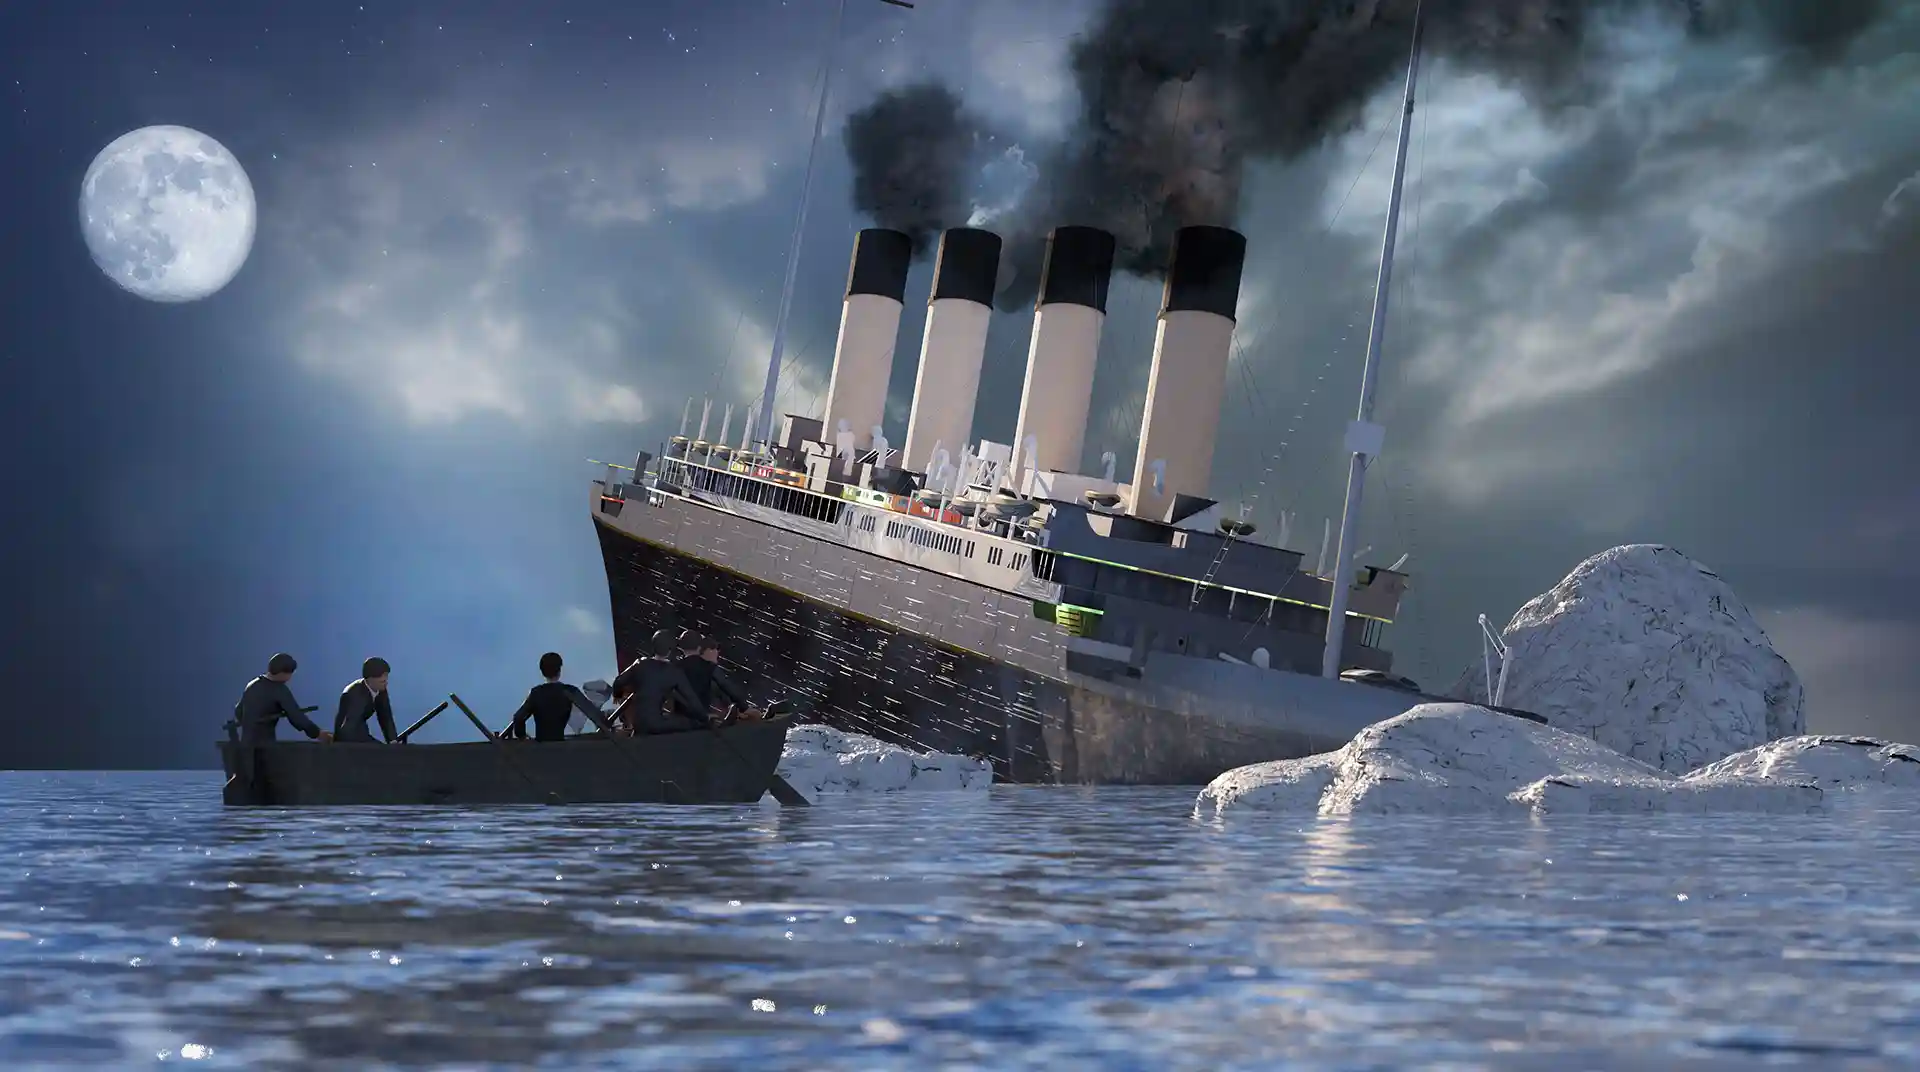 ผู้รอดชีวิตจากเรือ titanic ล่ม